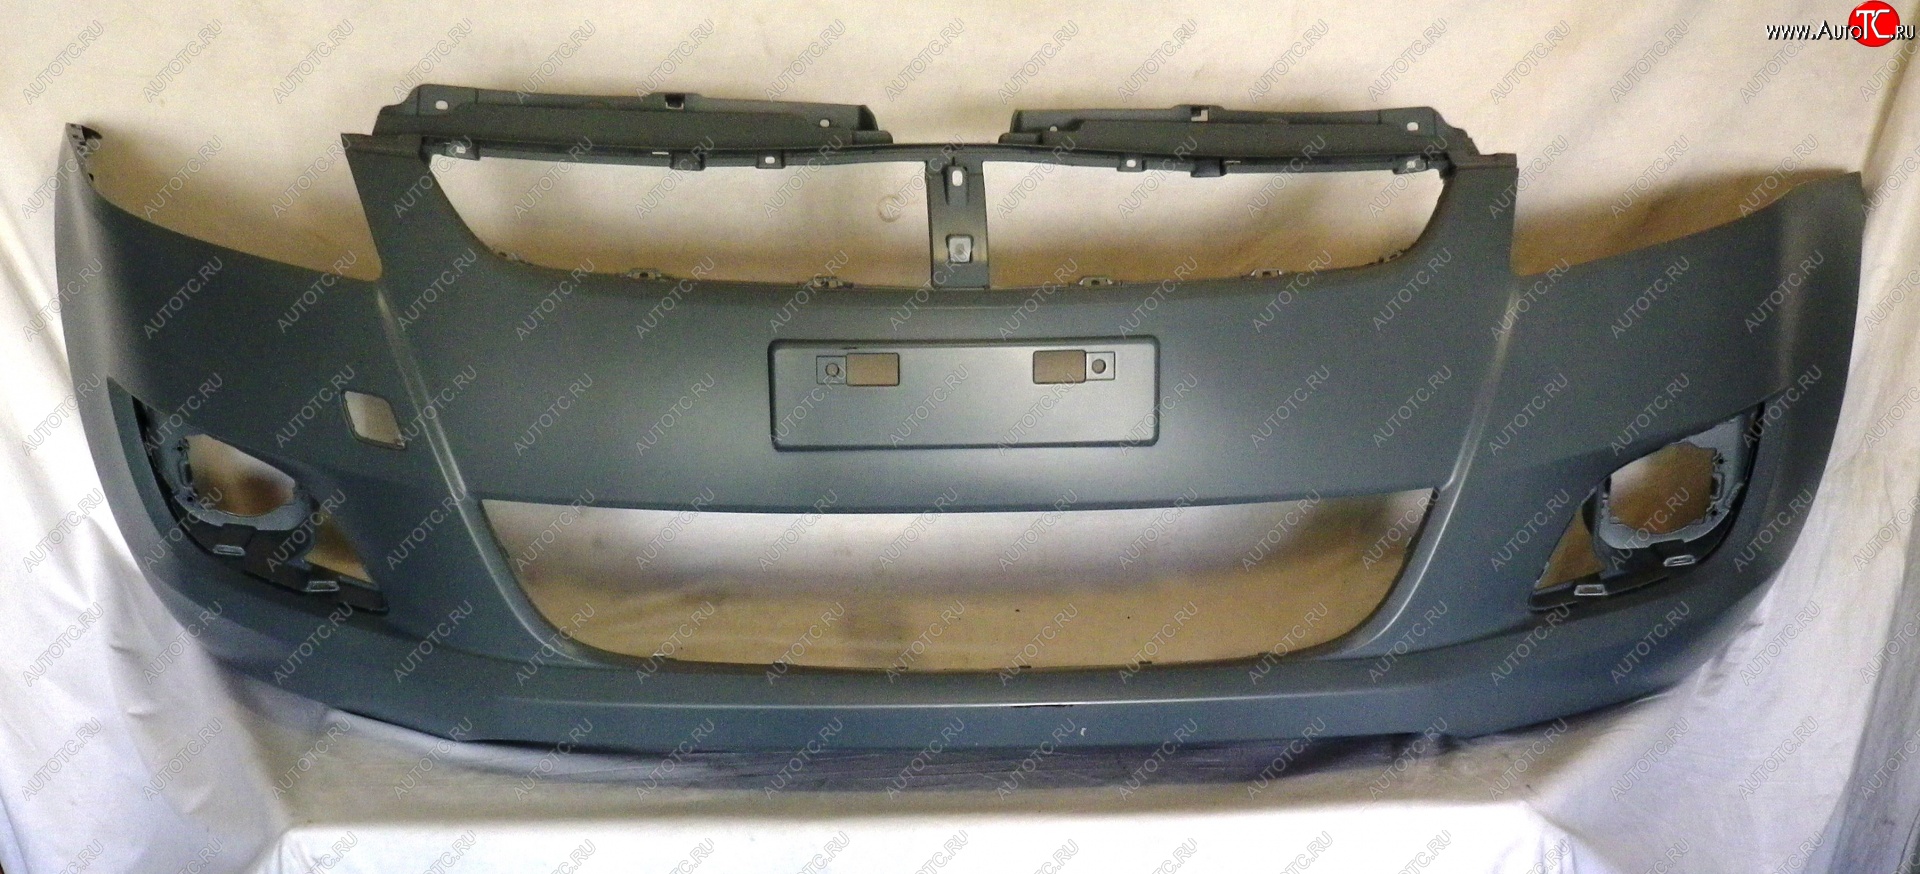 28 999 р. Передний бампер Original  Suzuki Swift  ZC72S (2010-2013) (Неокрашенный)  с доставкой в г. Калуга